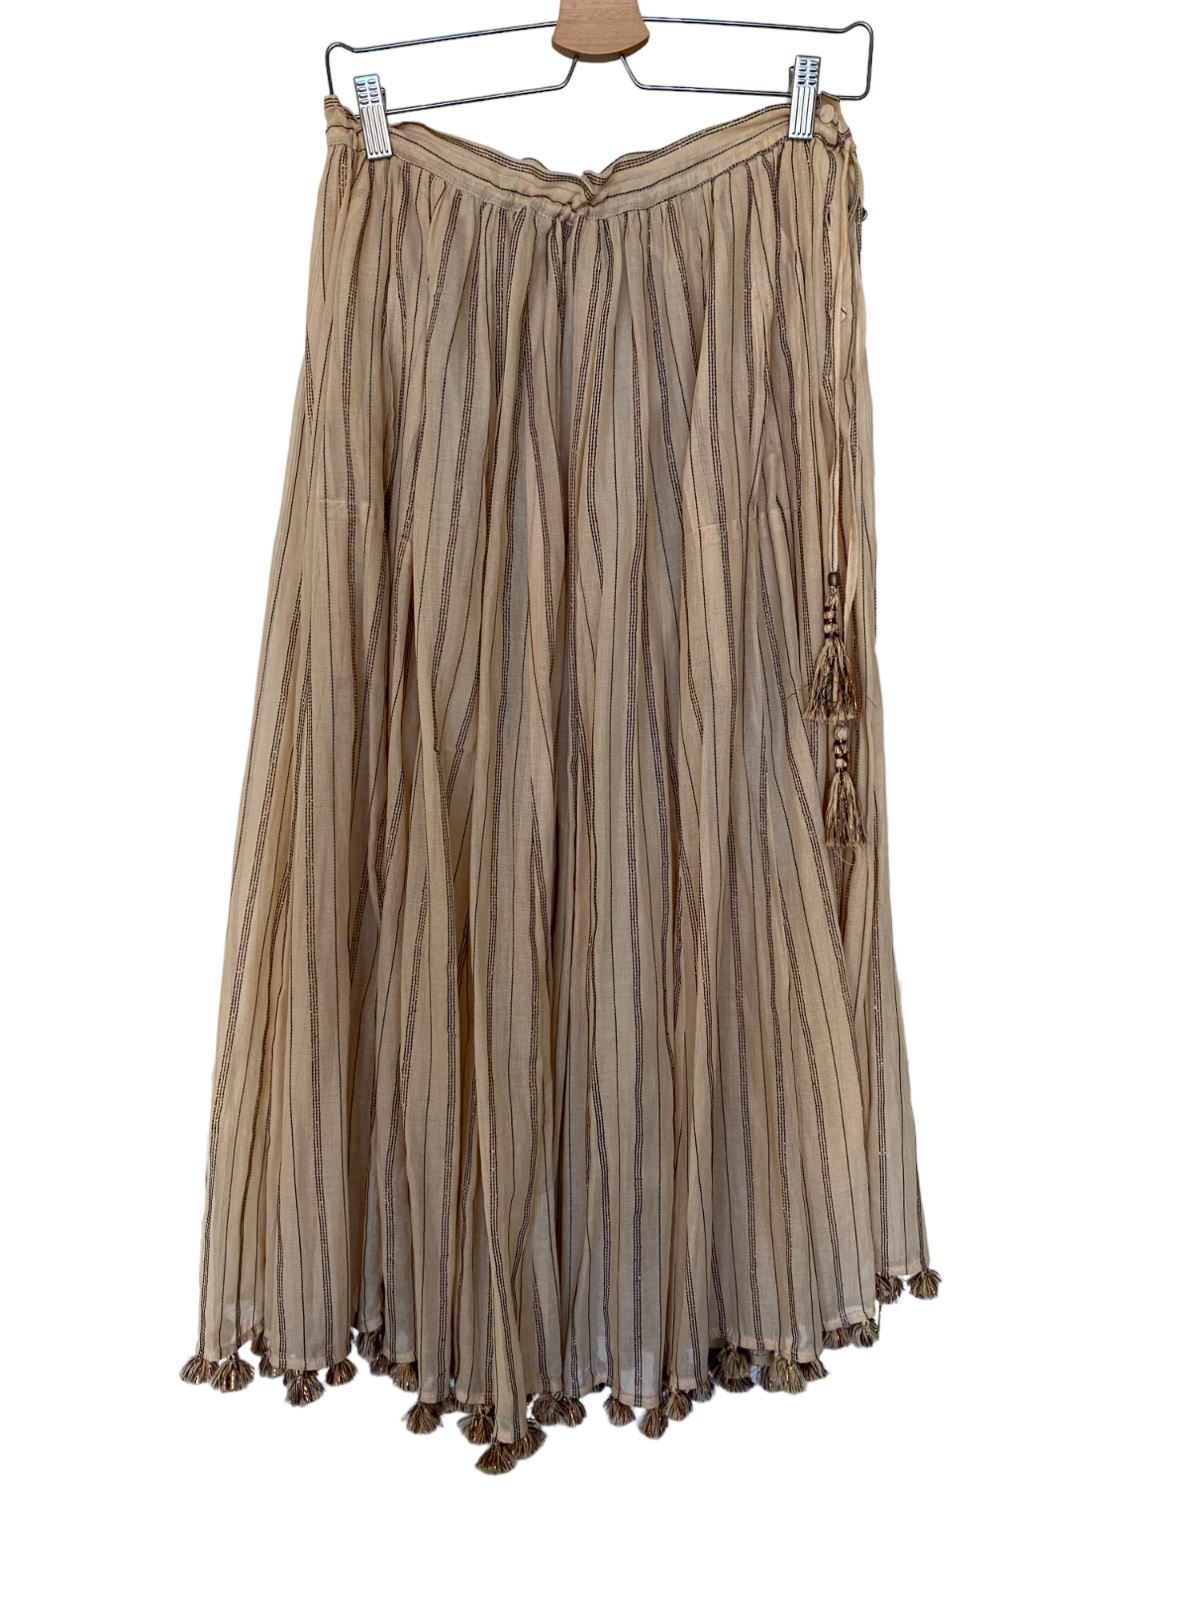 Zimmermann Suraya Draw Flare Skirt | Striped, Tassles, Lurex/Metallic, Cotton